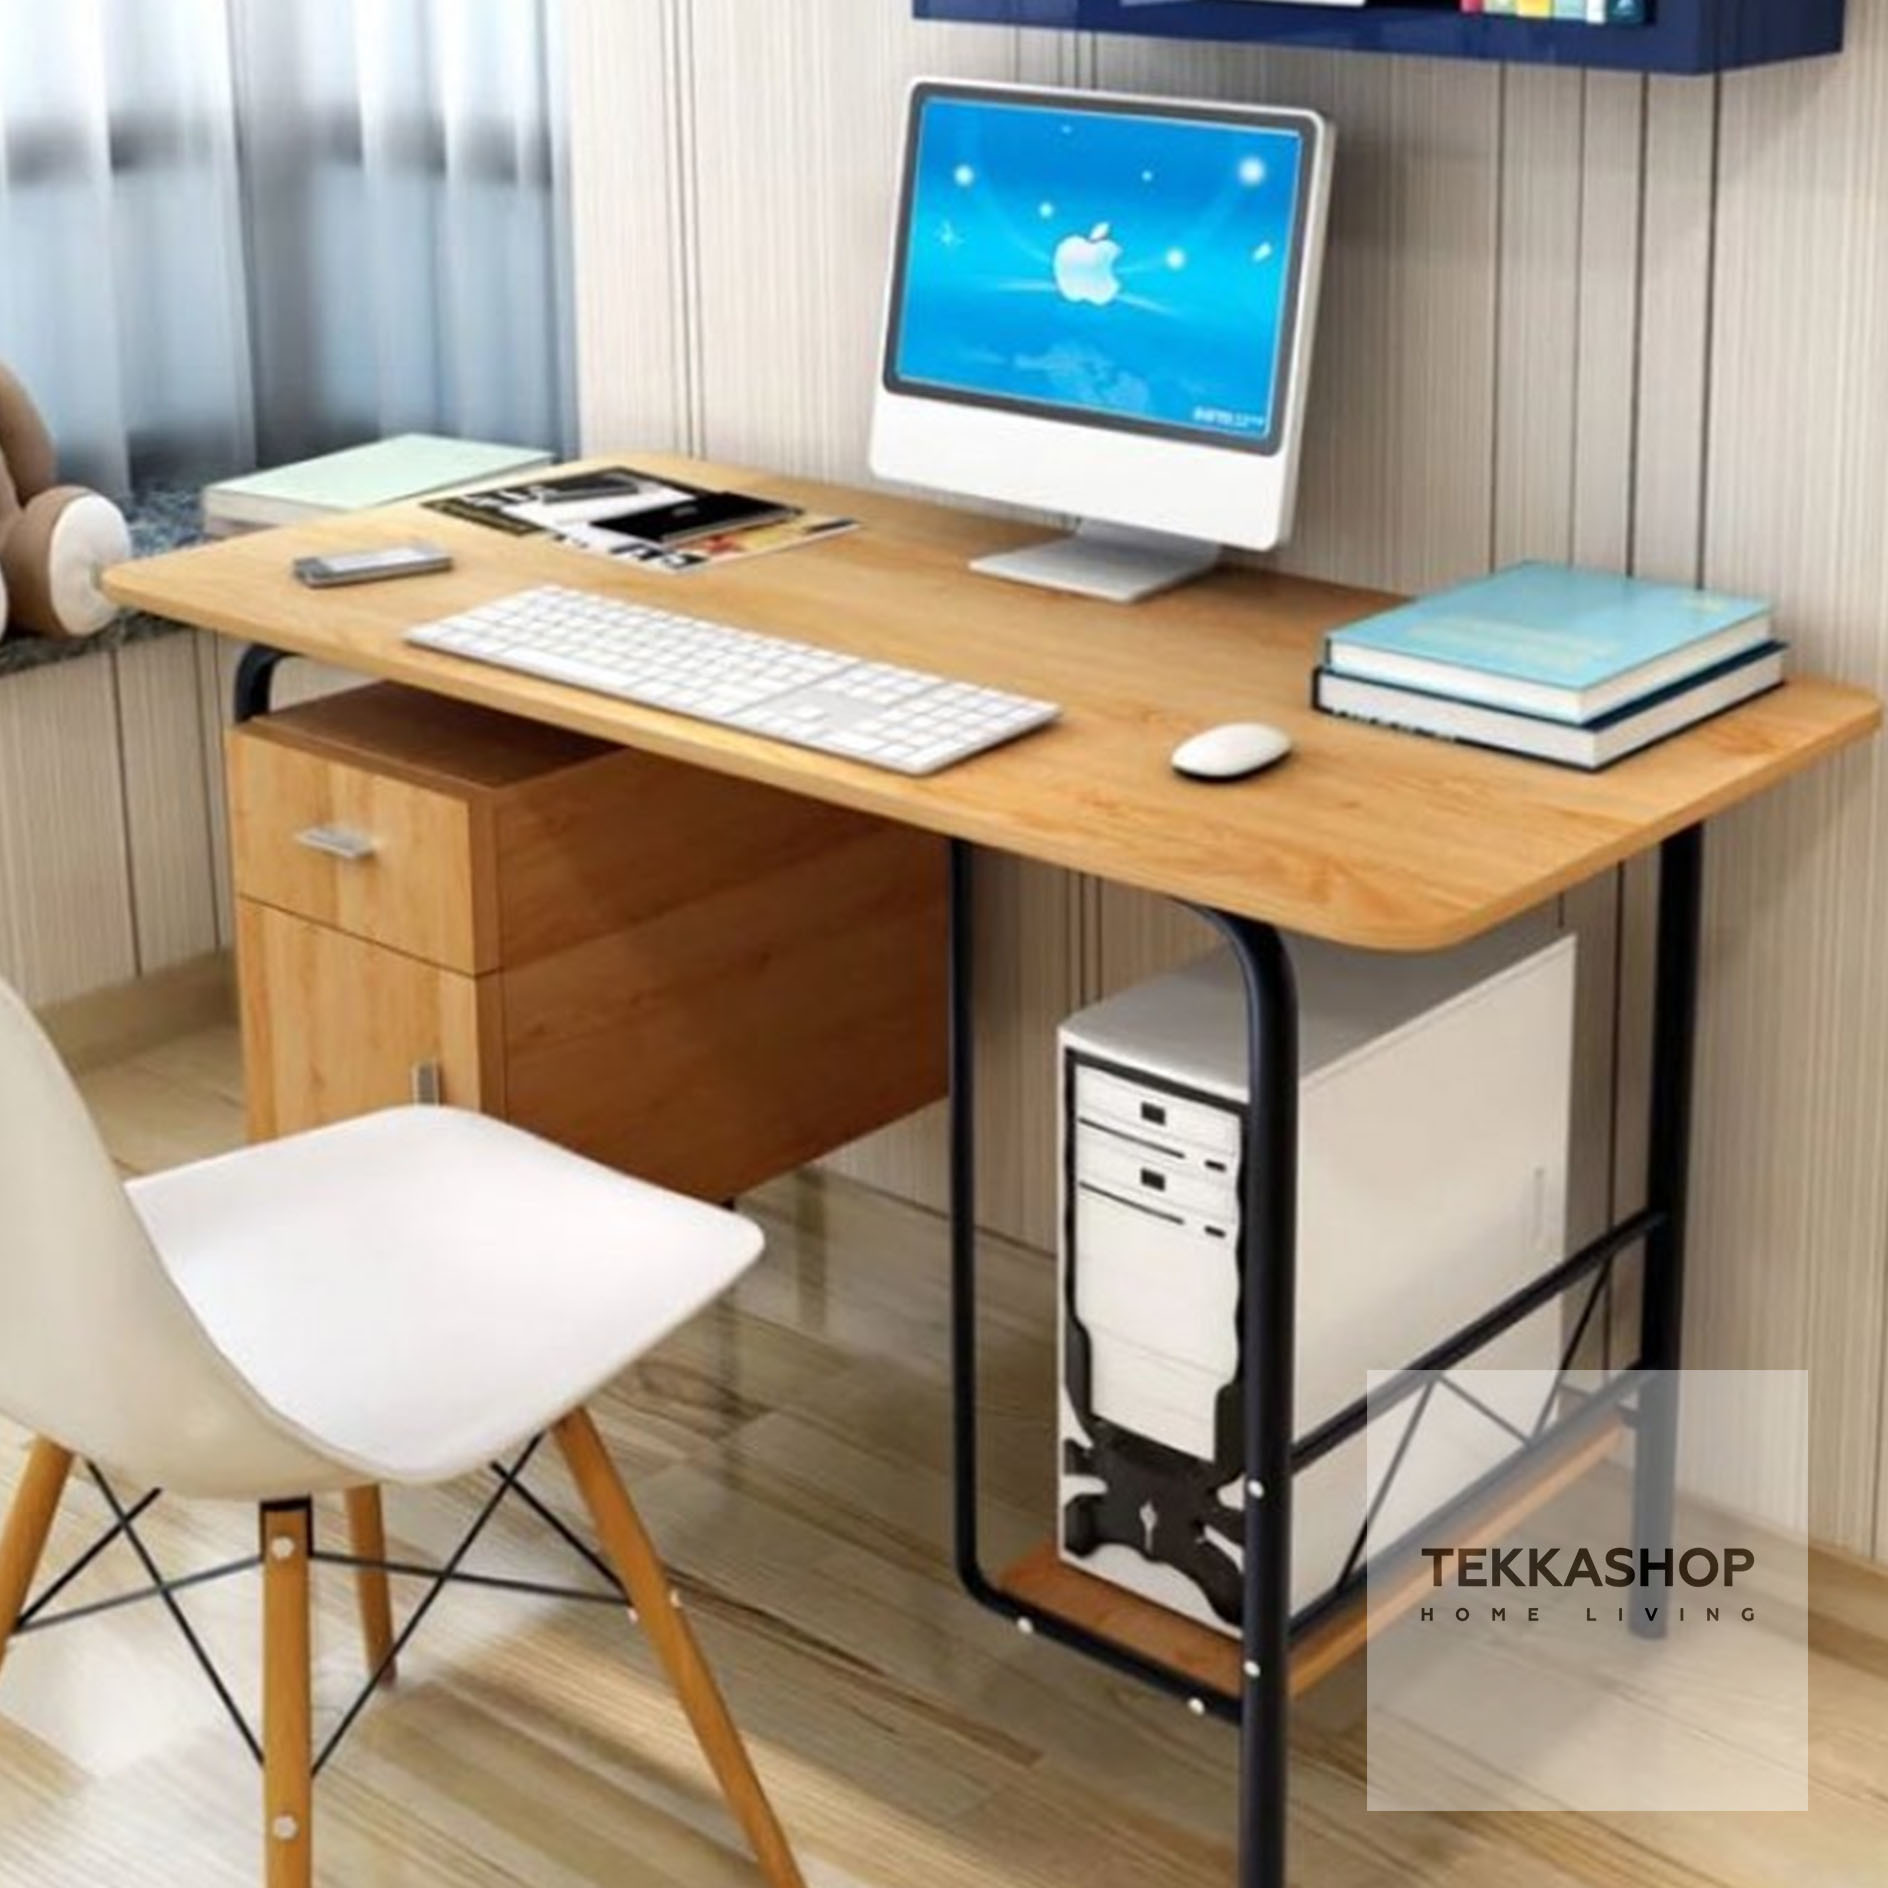 Tekkashop Gdts03br Wooden Study Desk Laptop Desk With Built In